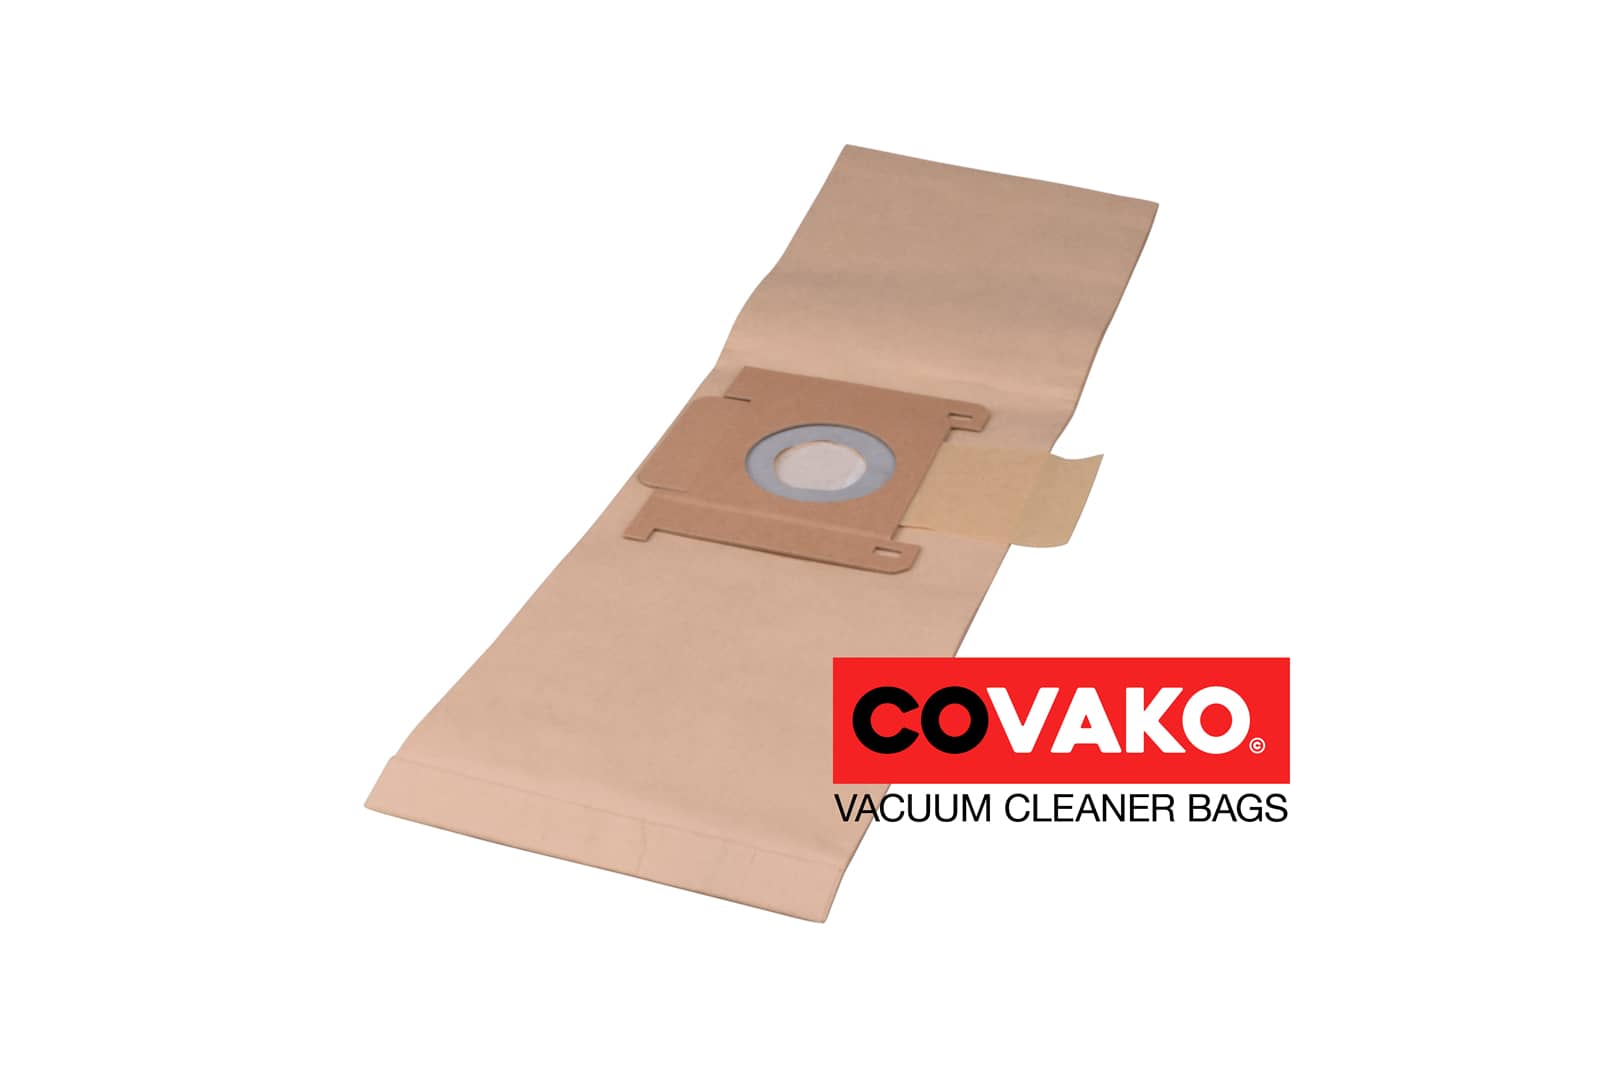 I-vac Basic Q / Paper - I-vac vacuum cleaner bags